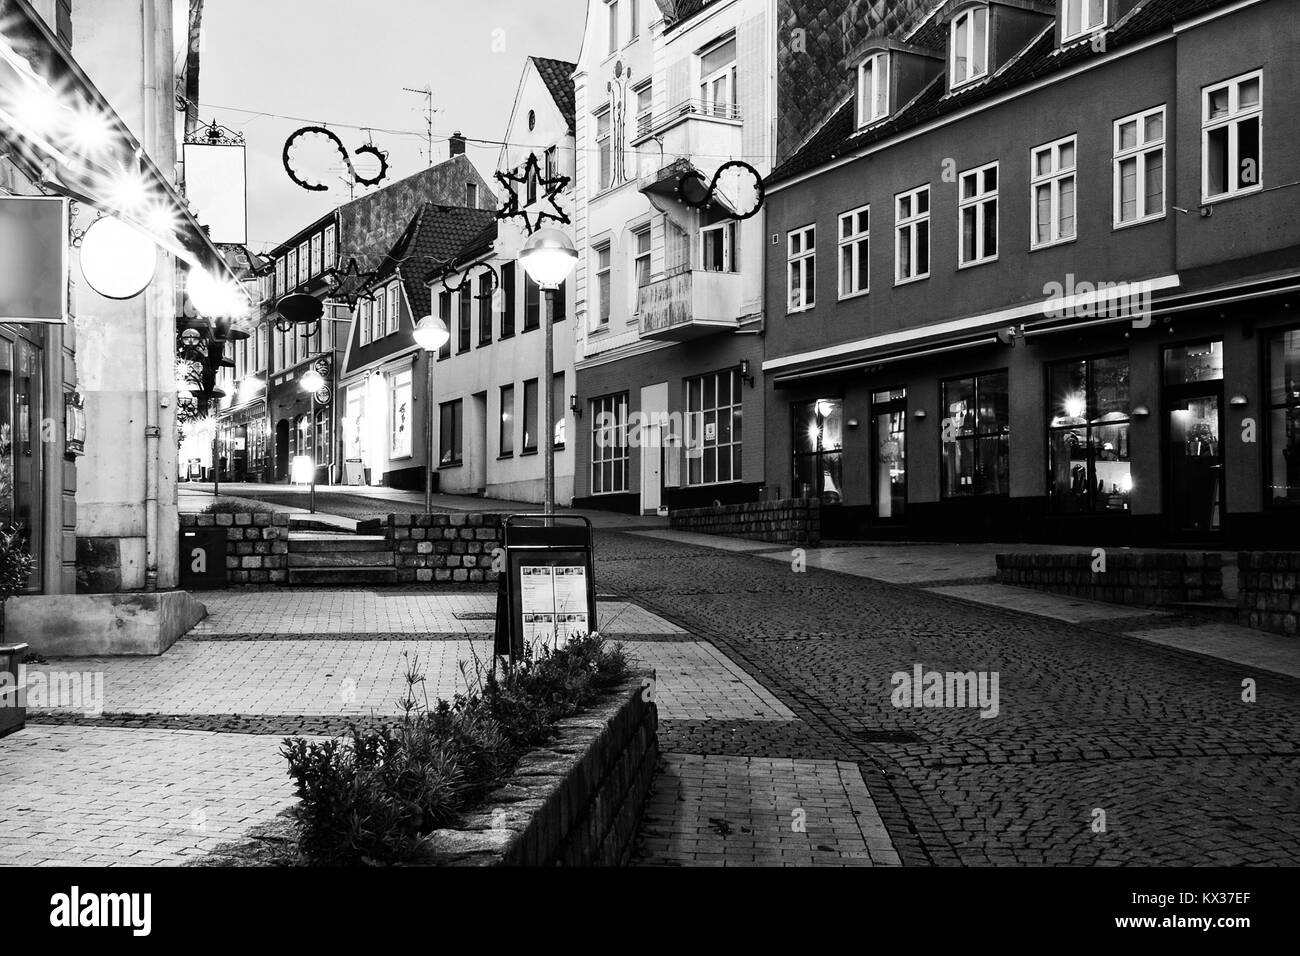 Cityscape Sonderborg Denmark Europe Immagini e Fotos Stock - Alamy